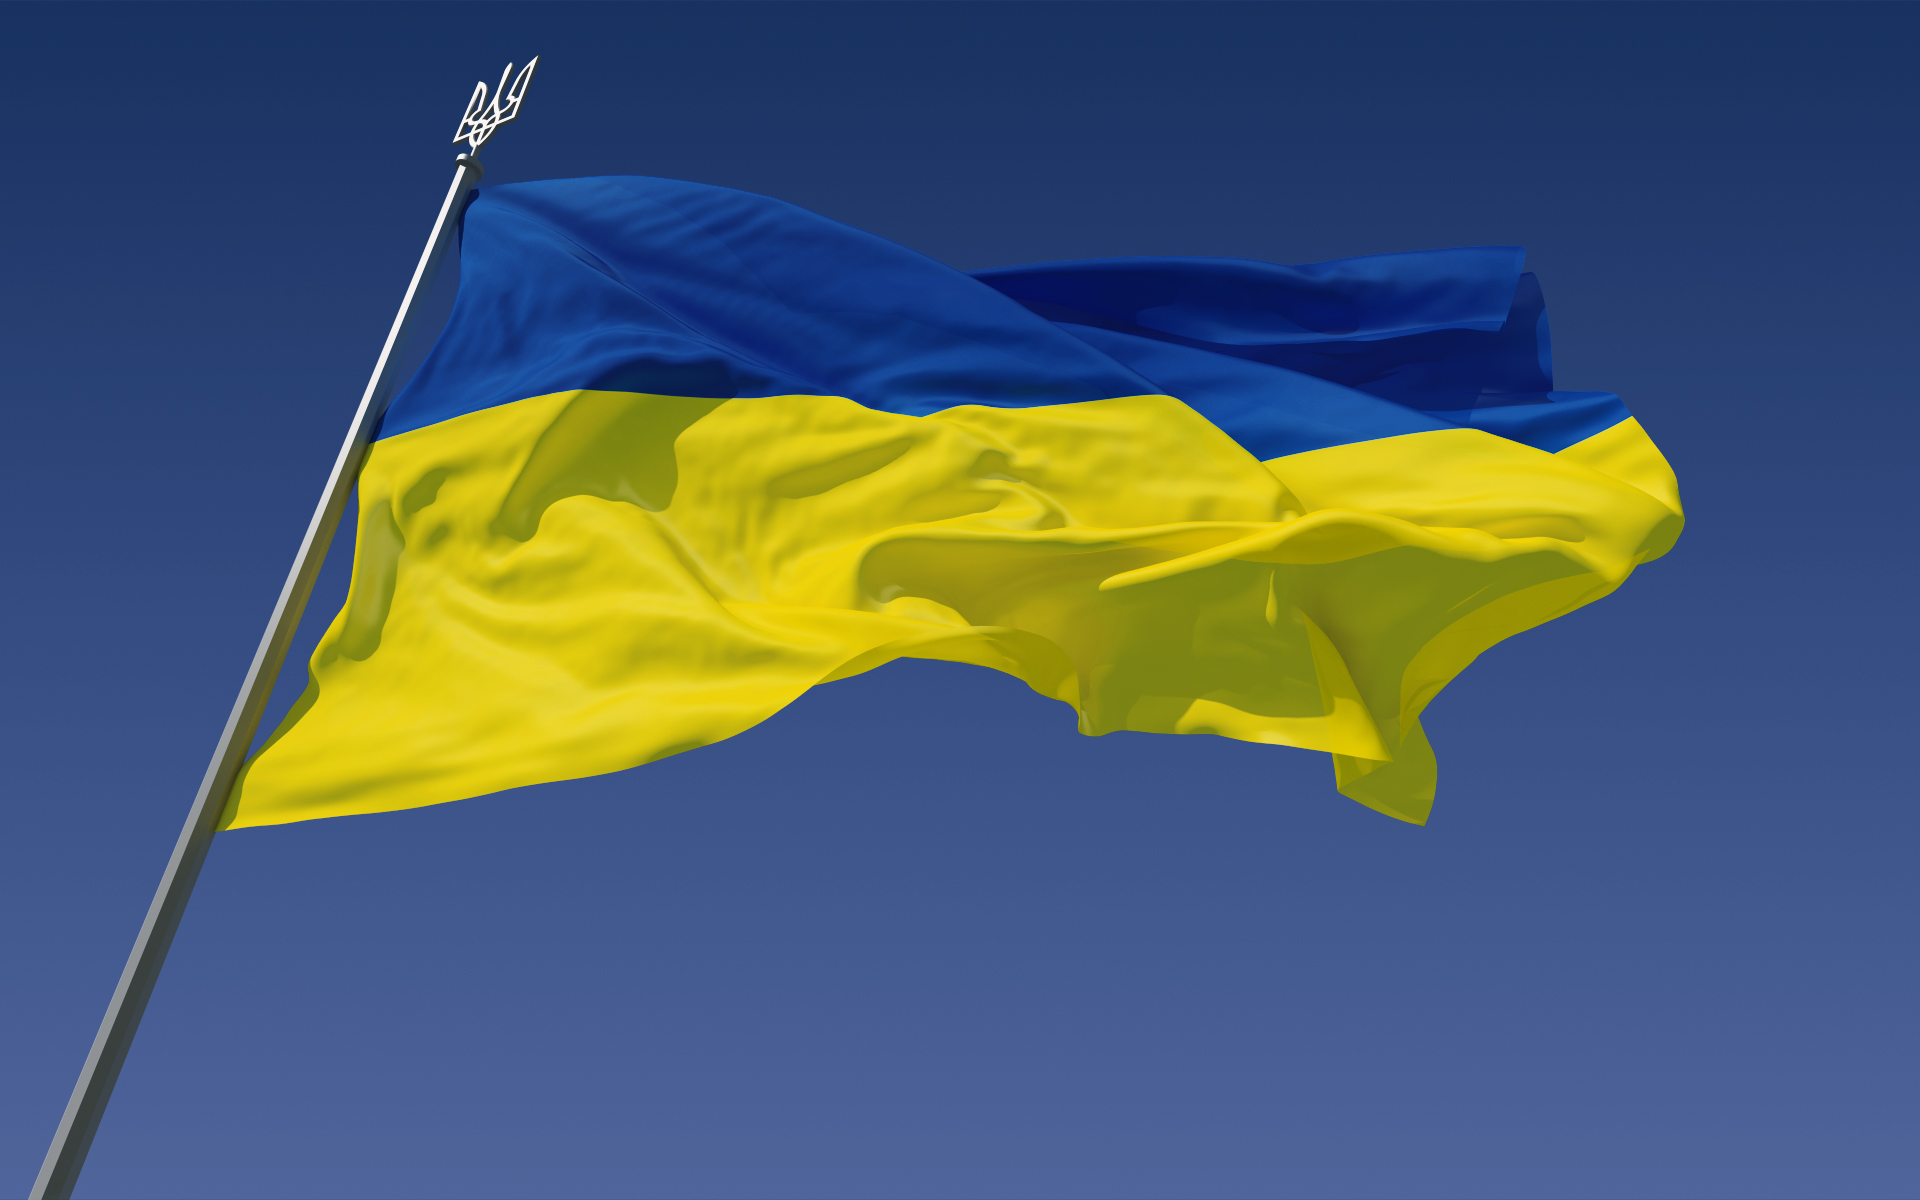 अन्तर्राष्ट्रिय आणविक ऊर्जा निकाय रुसी प्रचारमा फस्योः युक्रेन